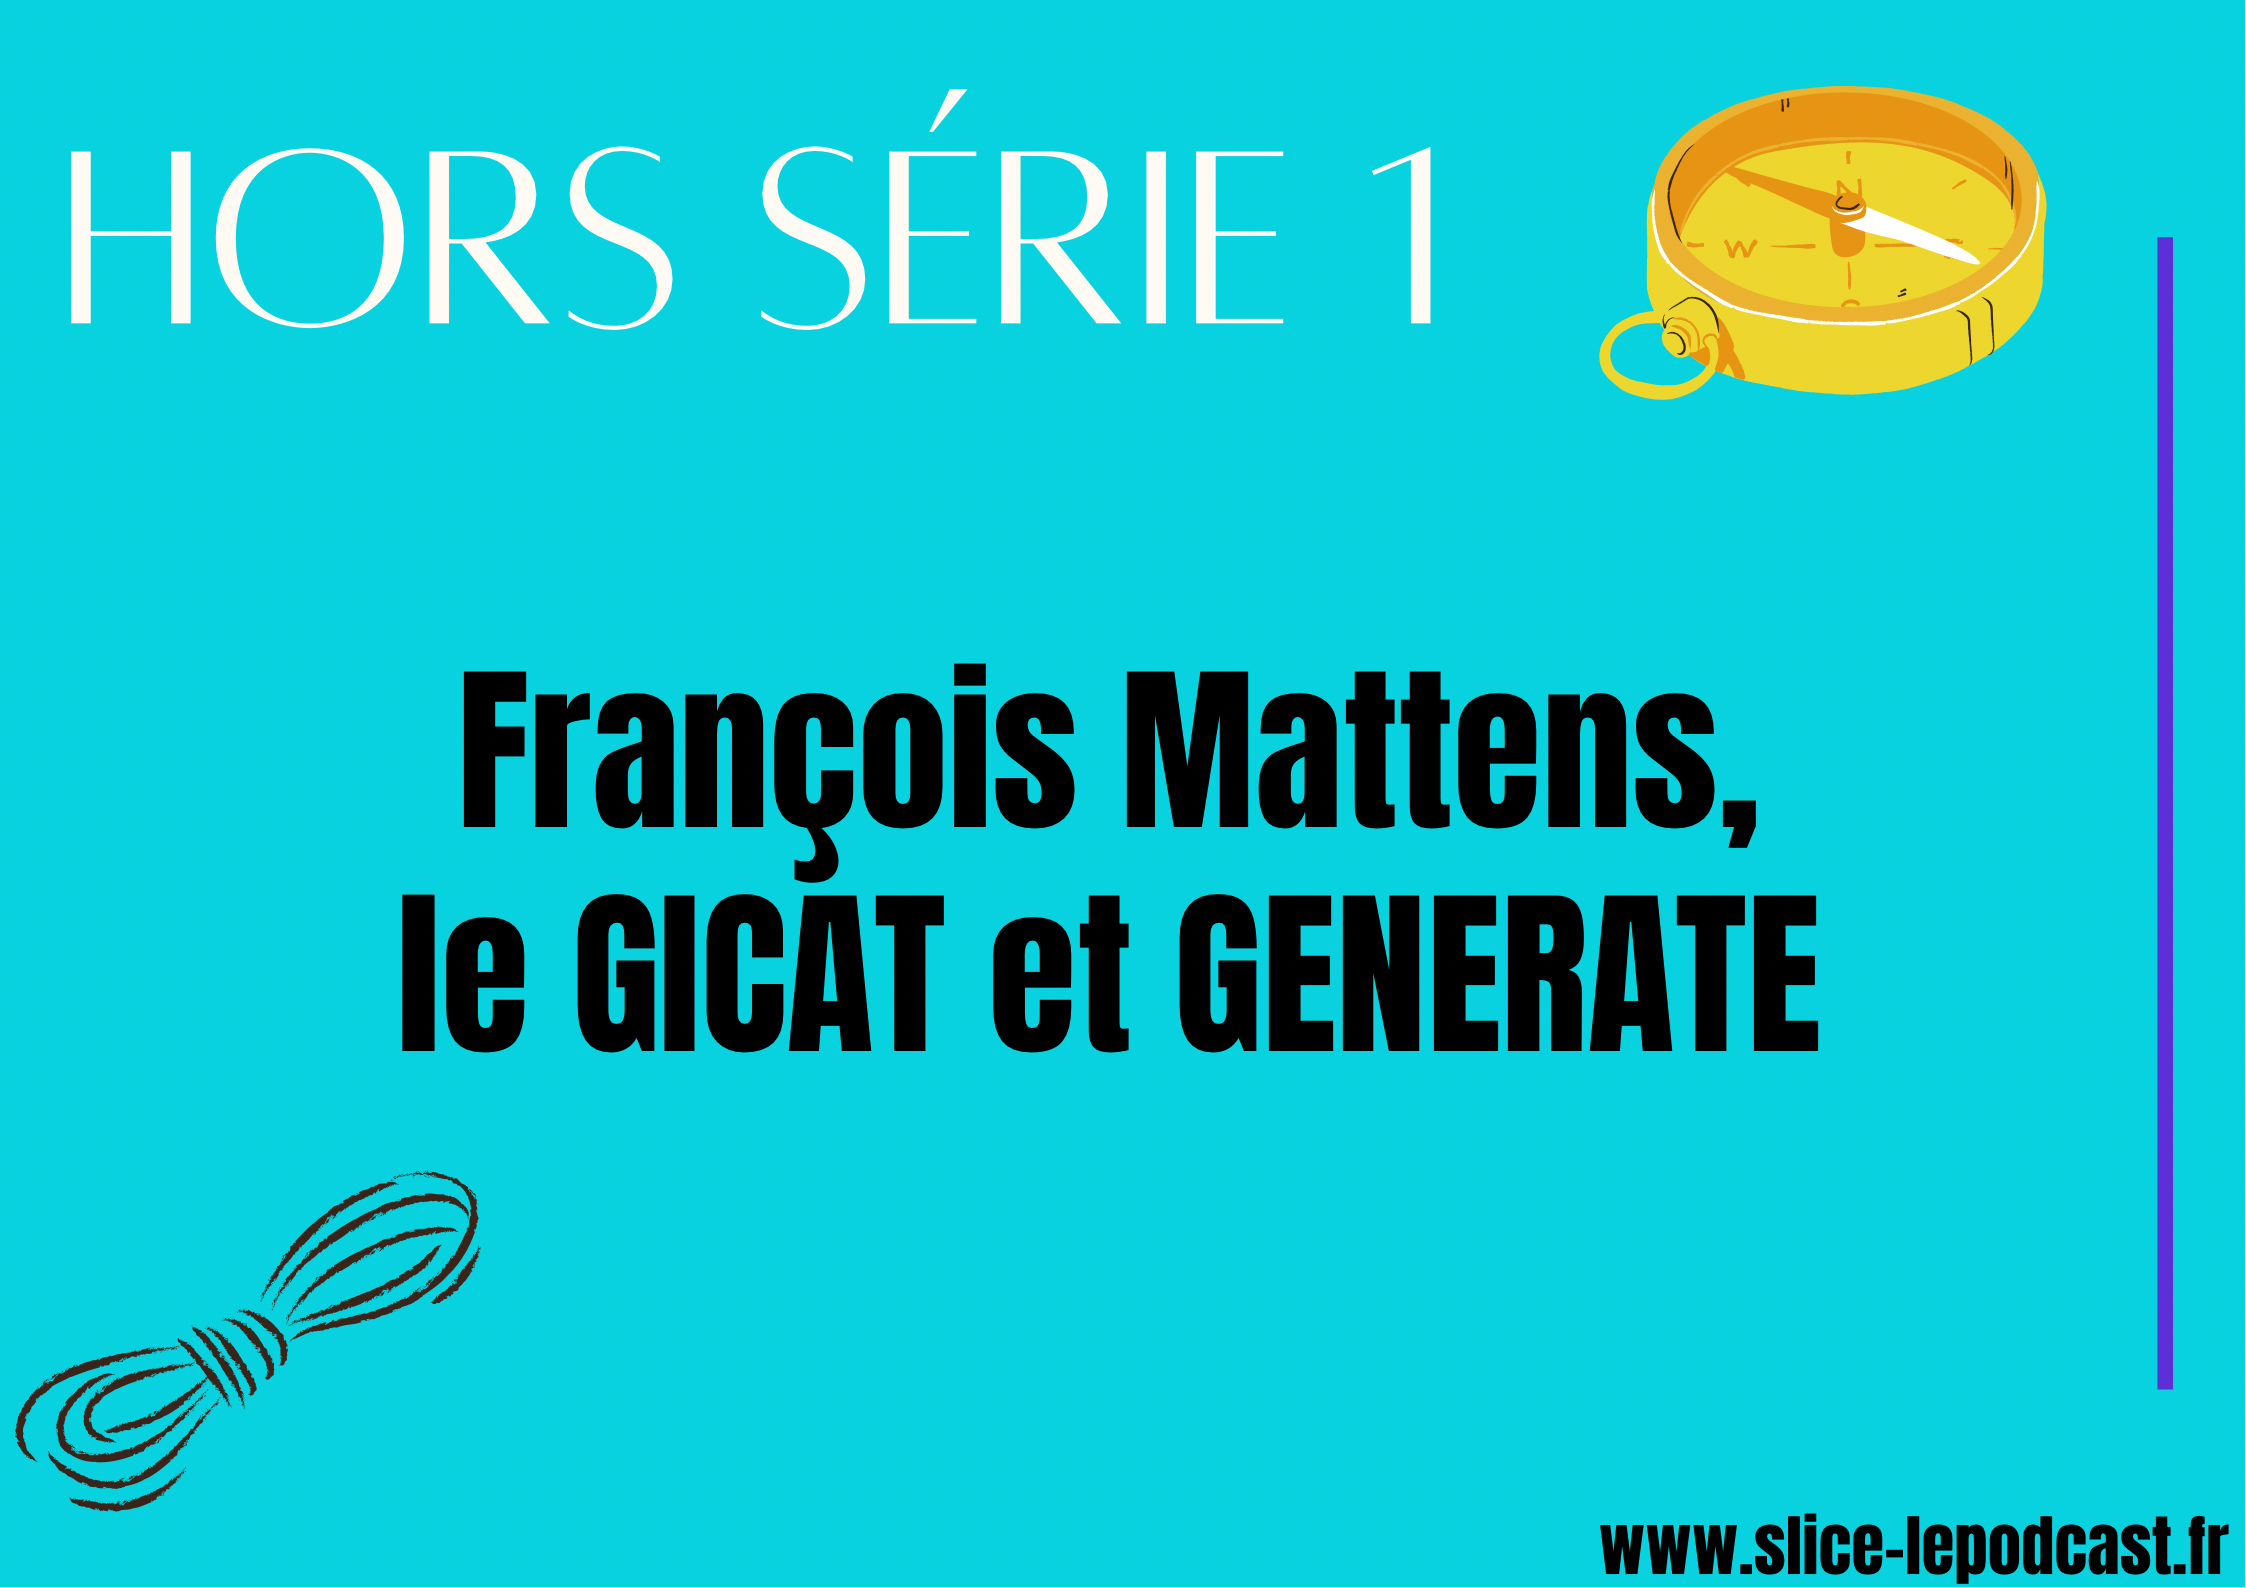 HORS SÉRIE 1 : François Mattens, le GICAT et GENERATE